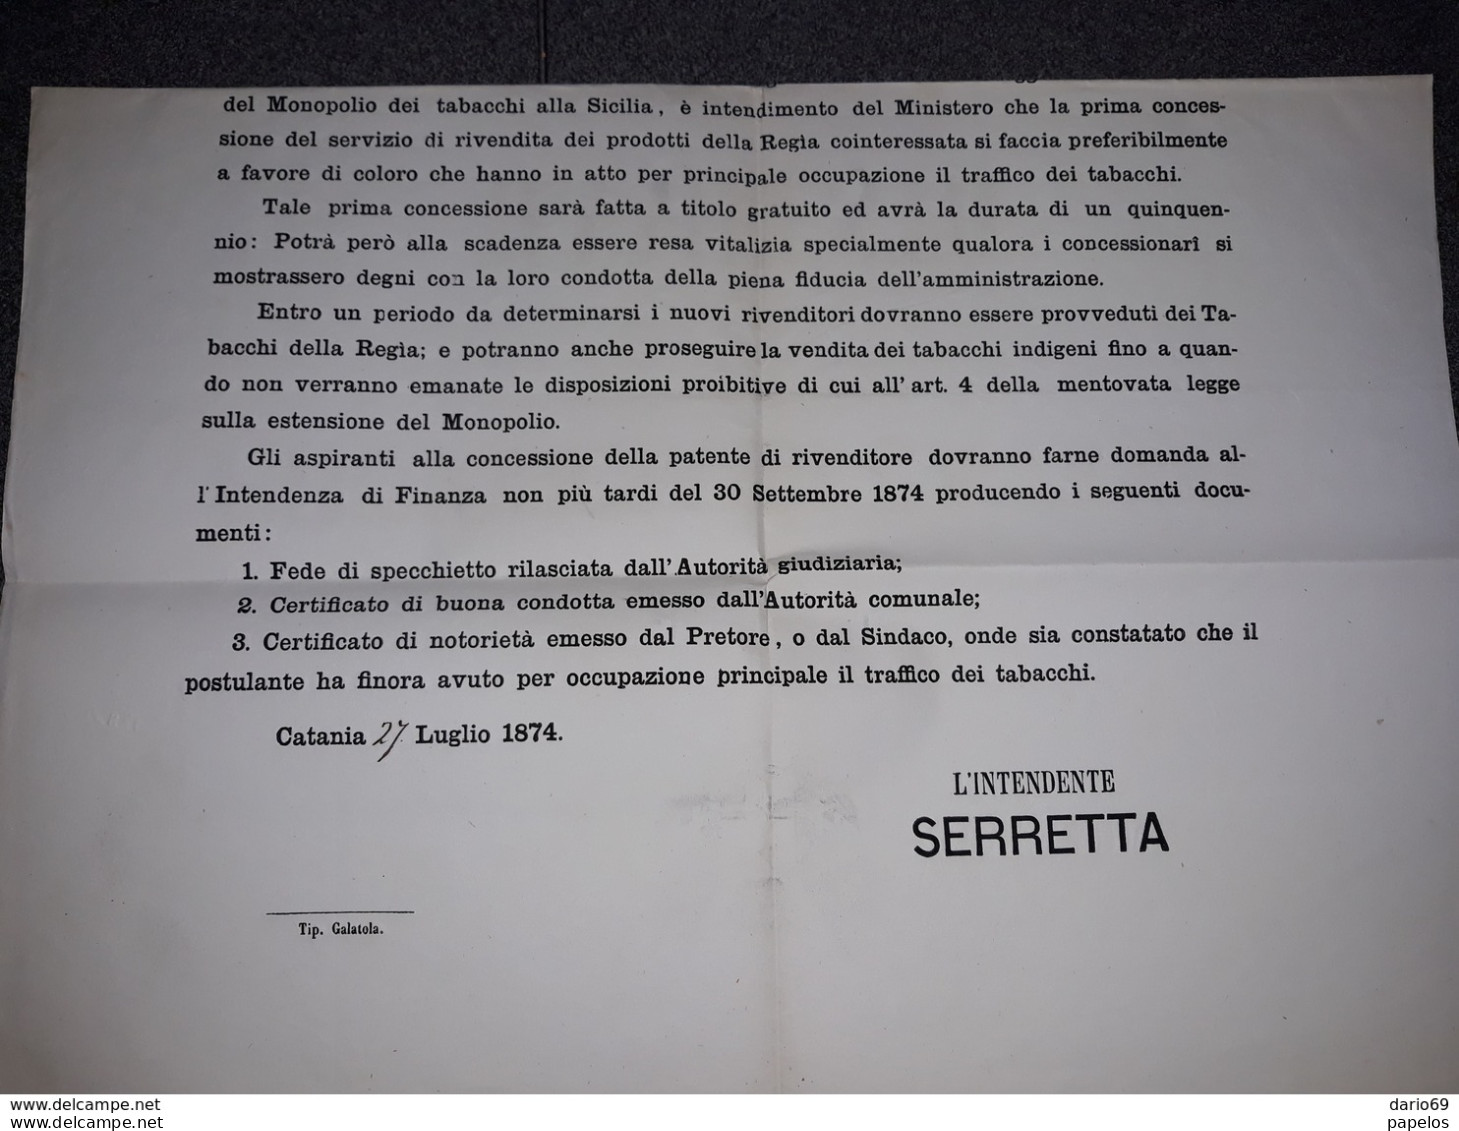 1874 MANIFESTO CATANIA  ESTENSIONE DEI MONOPOLI DI TABACCHI ALLA SICILIA - Historical Documents